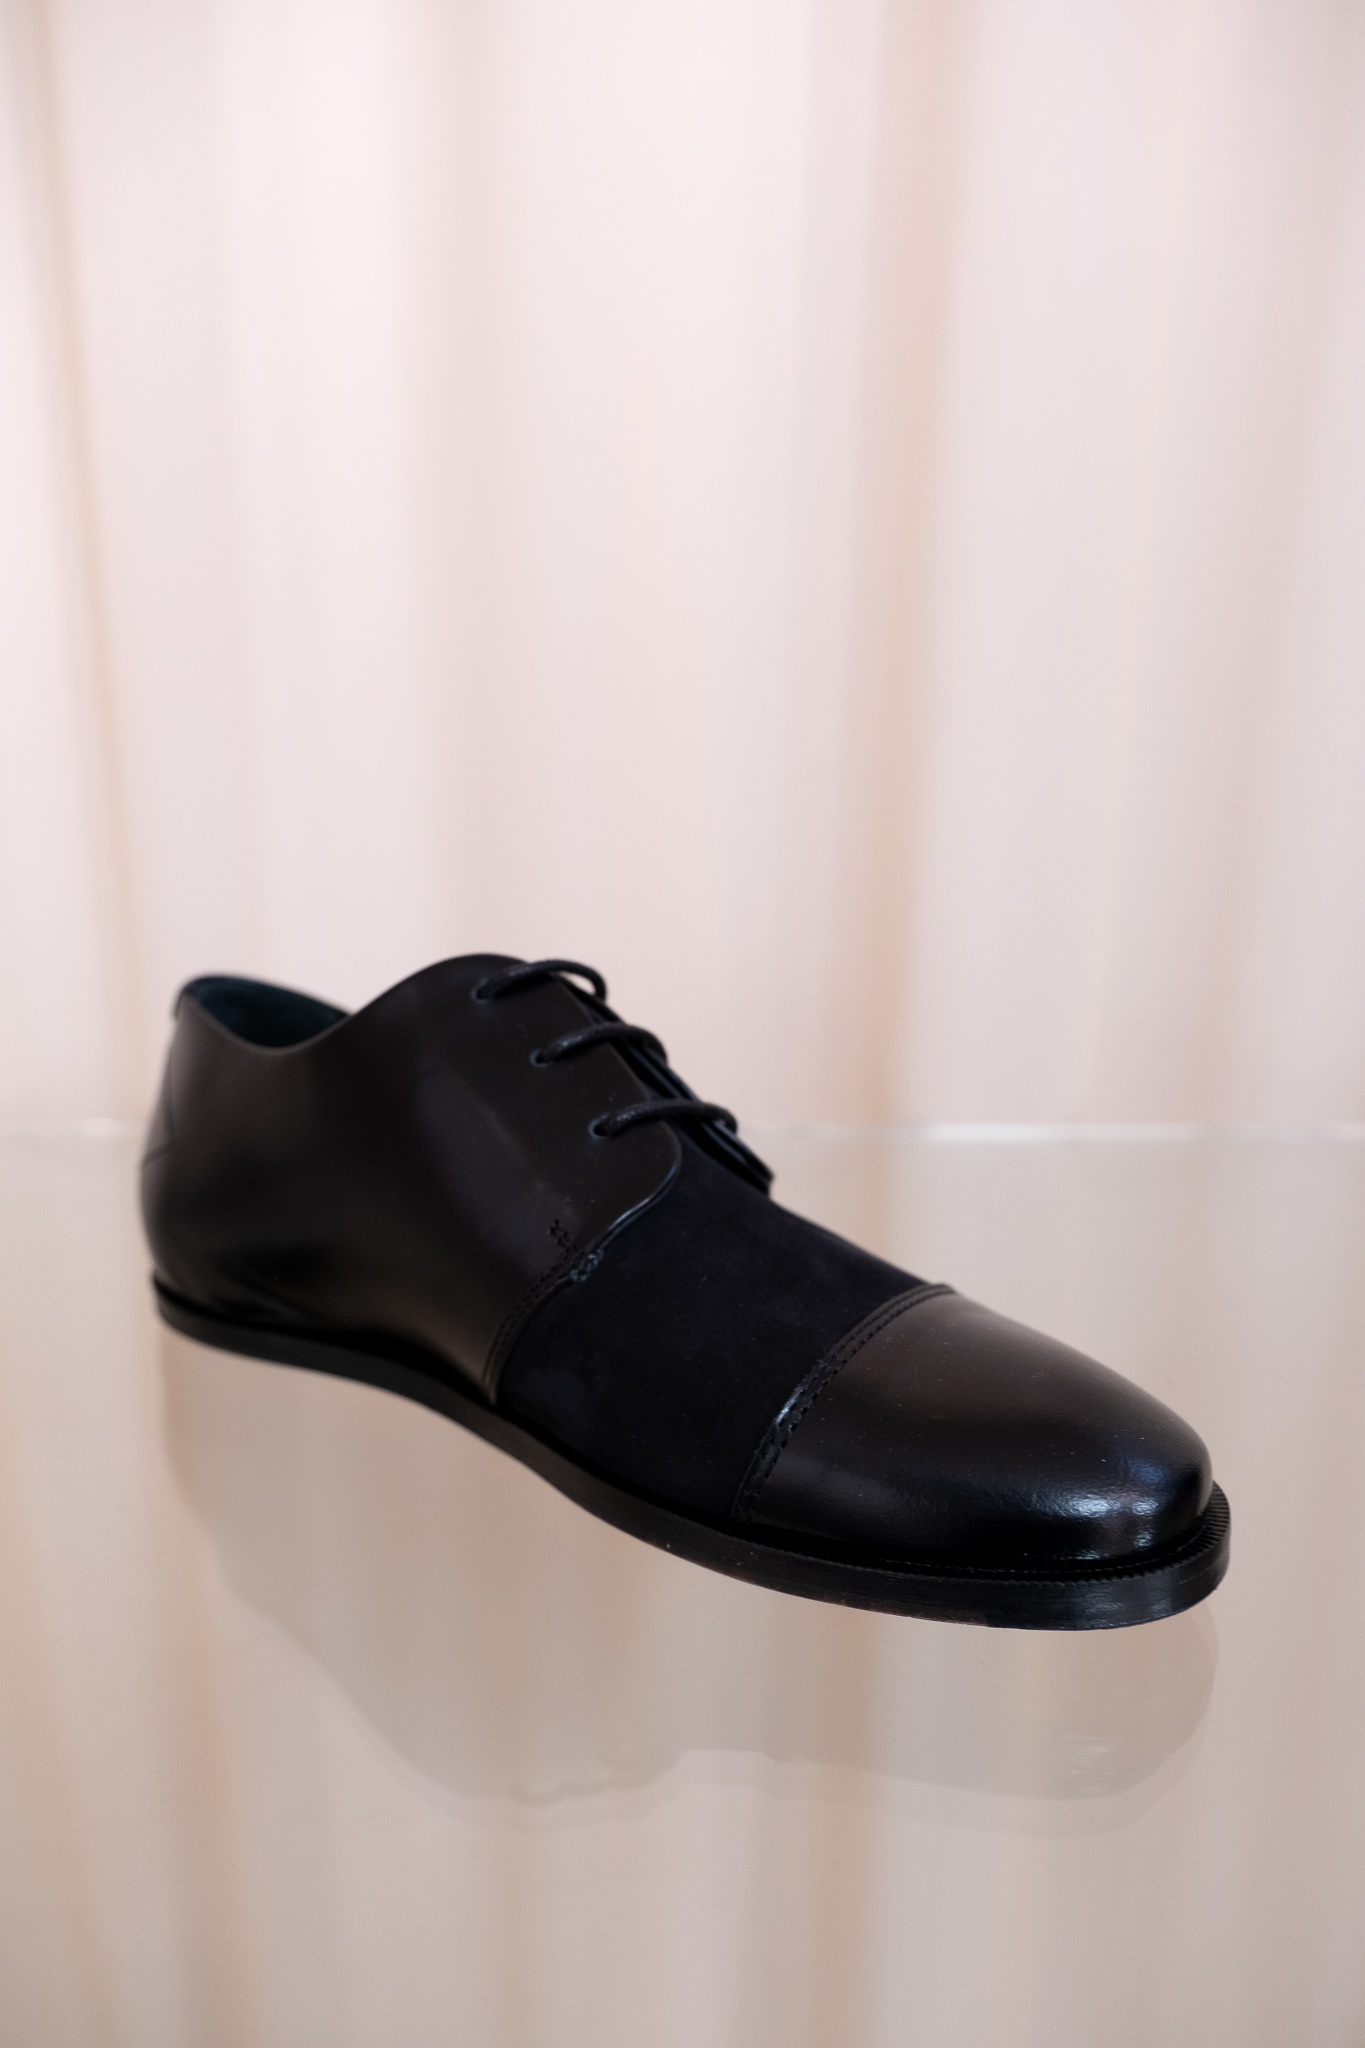 Muanza lace-up shoes black